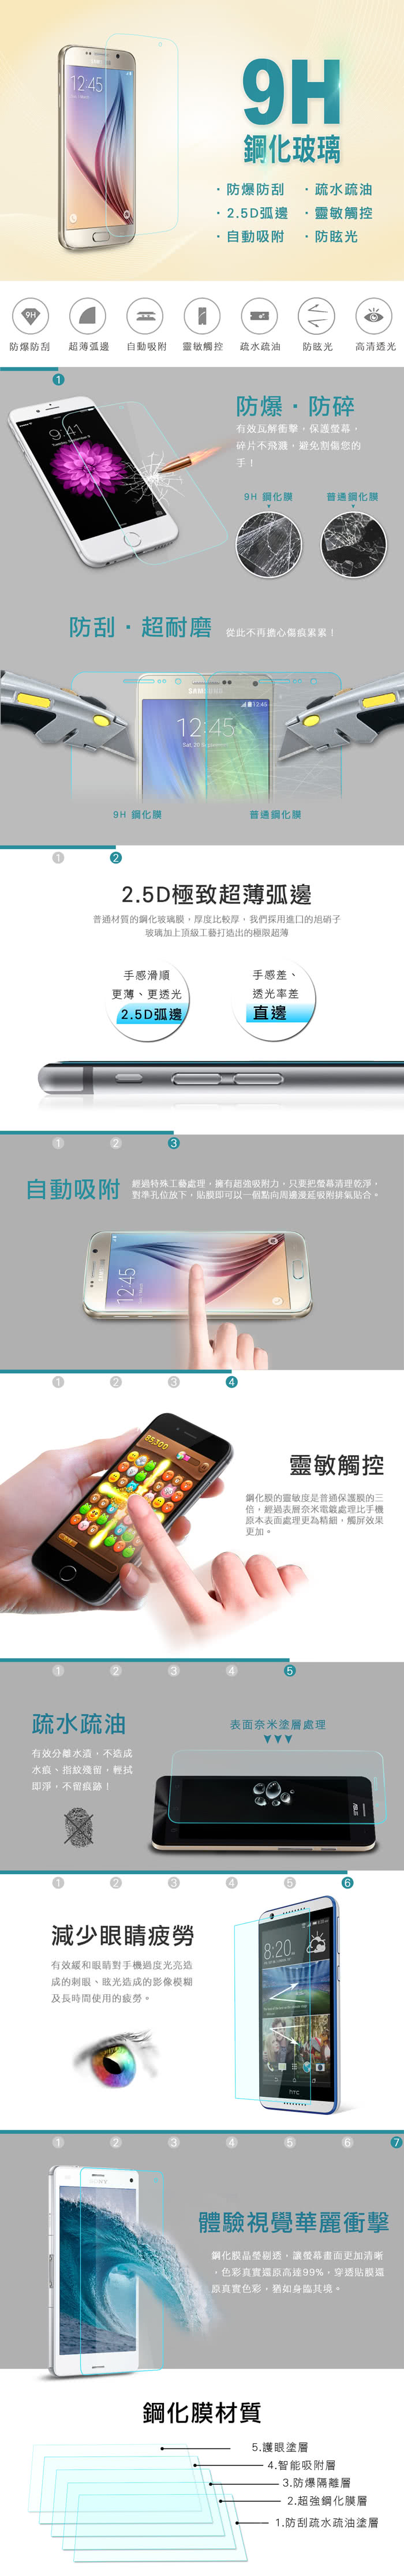 【YANG YI】揚邑 Samsung Galaxy A8 2016版 9H鋼化玻璃保護貼膜(防爆防刮防眩弧邊)